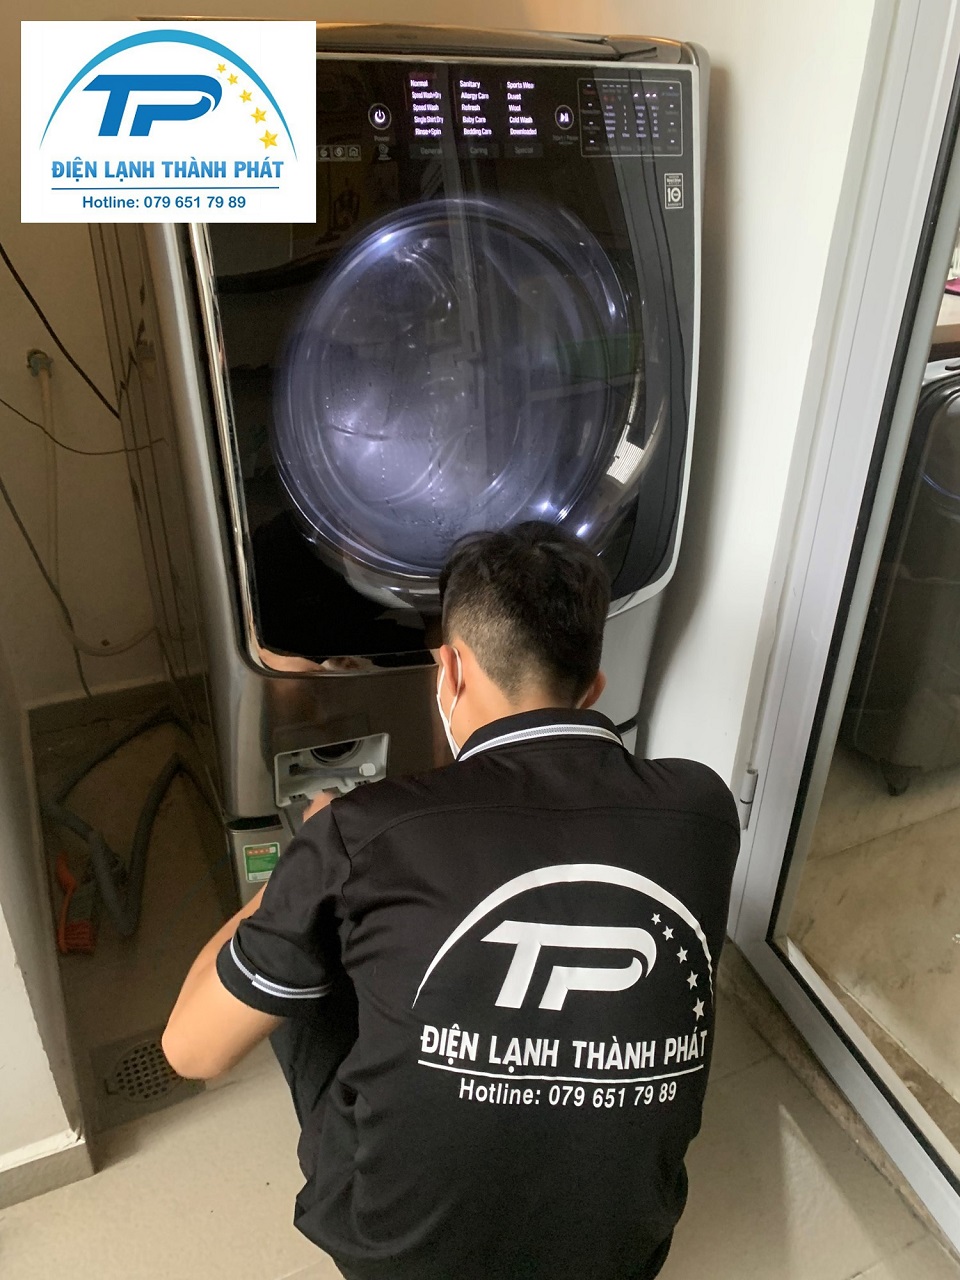 Liên hệ đến  Điện lạnh Thành Phát - đơn vị chuyên sửa chữa máy giặt